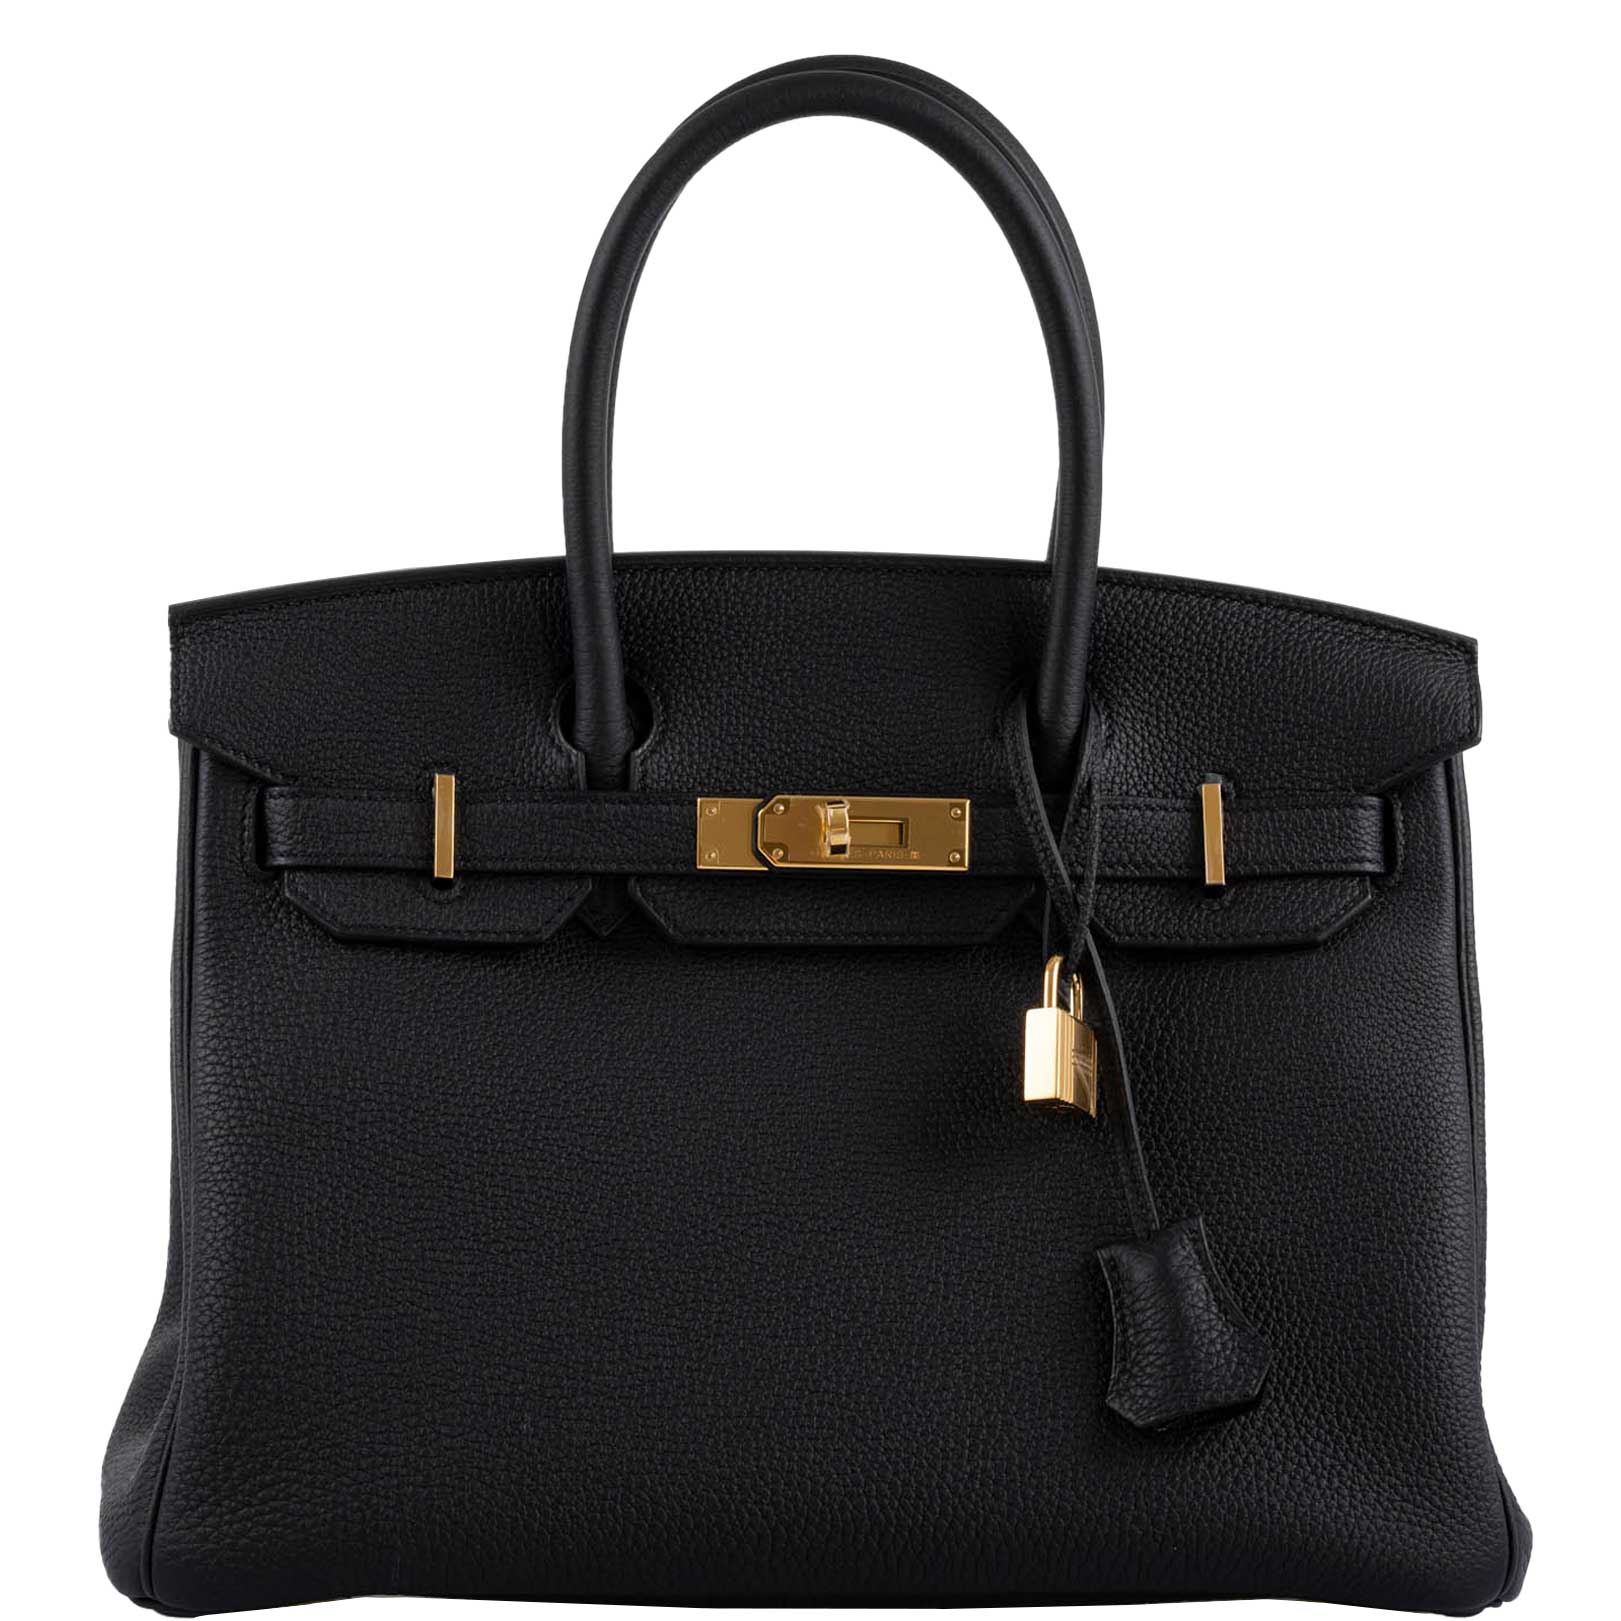 Hermes Birkin 30 Bag Black Gold Hardware Togo Leather